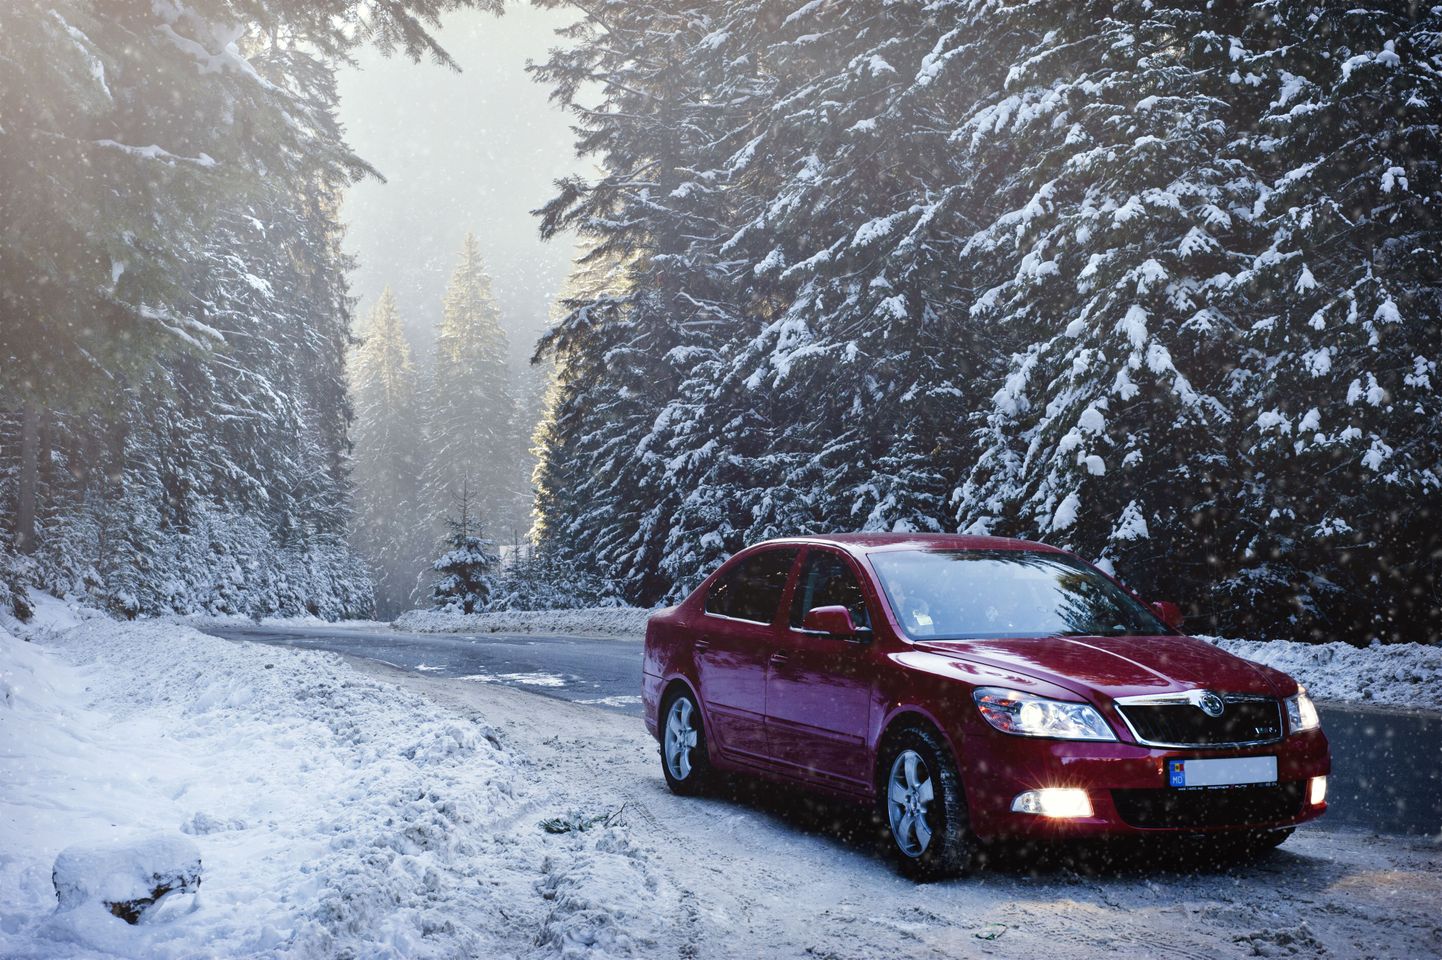 Sõidustiil tuleb valida ilma järgi - kui on lumine ja libe, siis ei tasu kiirustada.